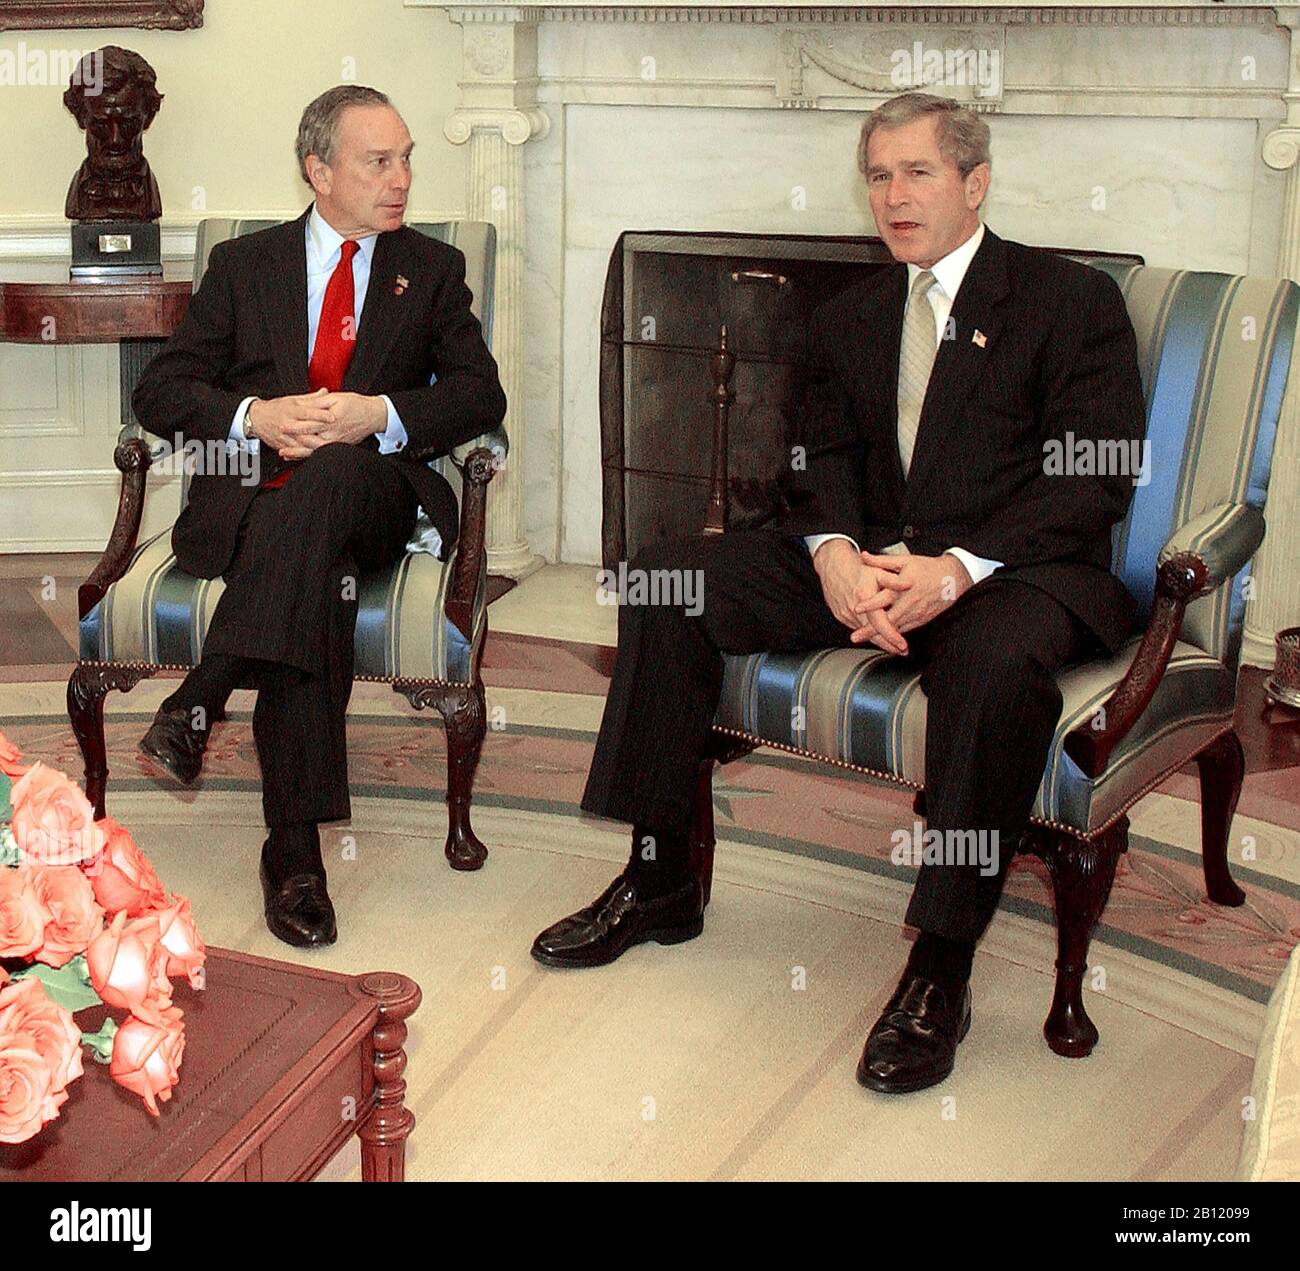 Il sindaco di New York Michael Bloomberg incontra il presidente degli Stati Uniti George W. Bush nell'ufficio ovale della Casa Bianca di Washington il 19 marzo 2003..Credit: Ron Sachs / CNP | usage worldwide Foto Stock